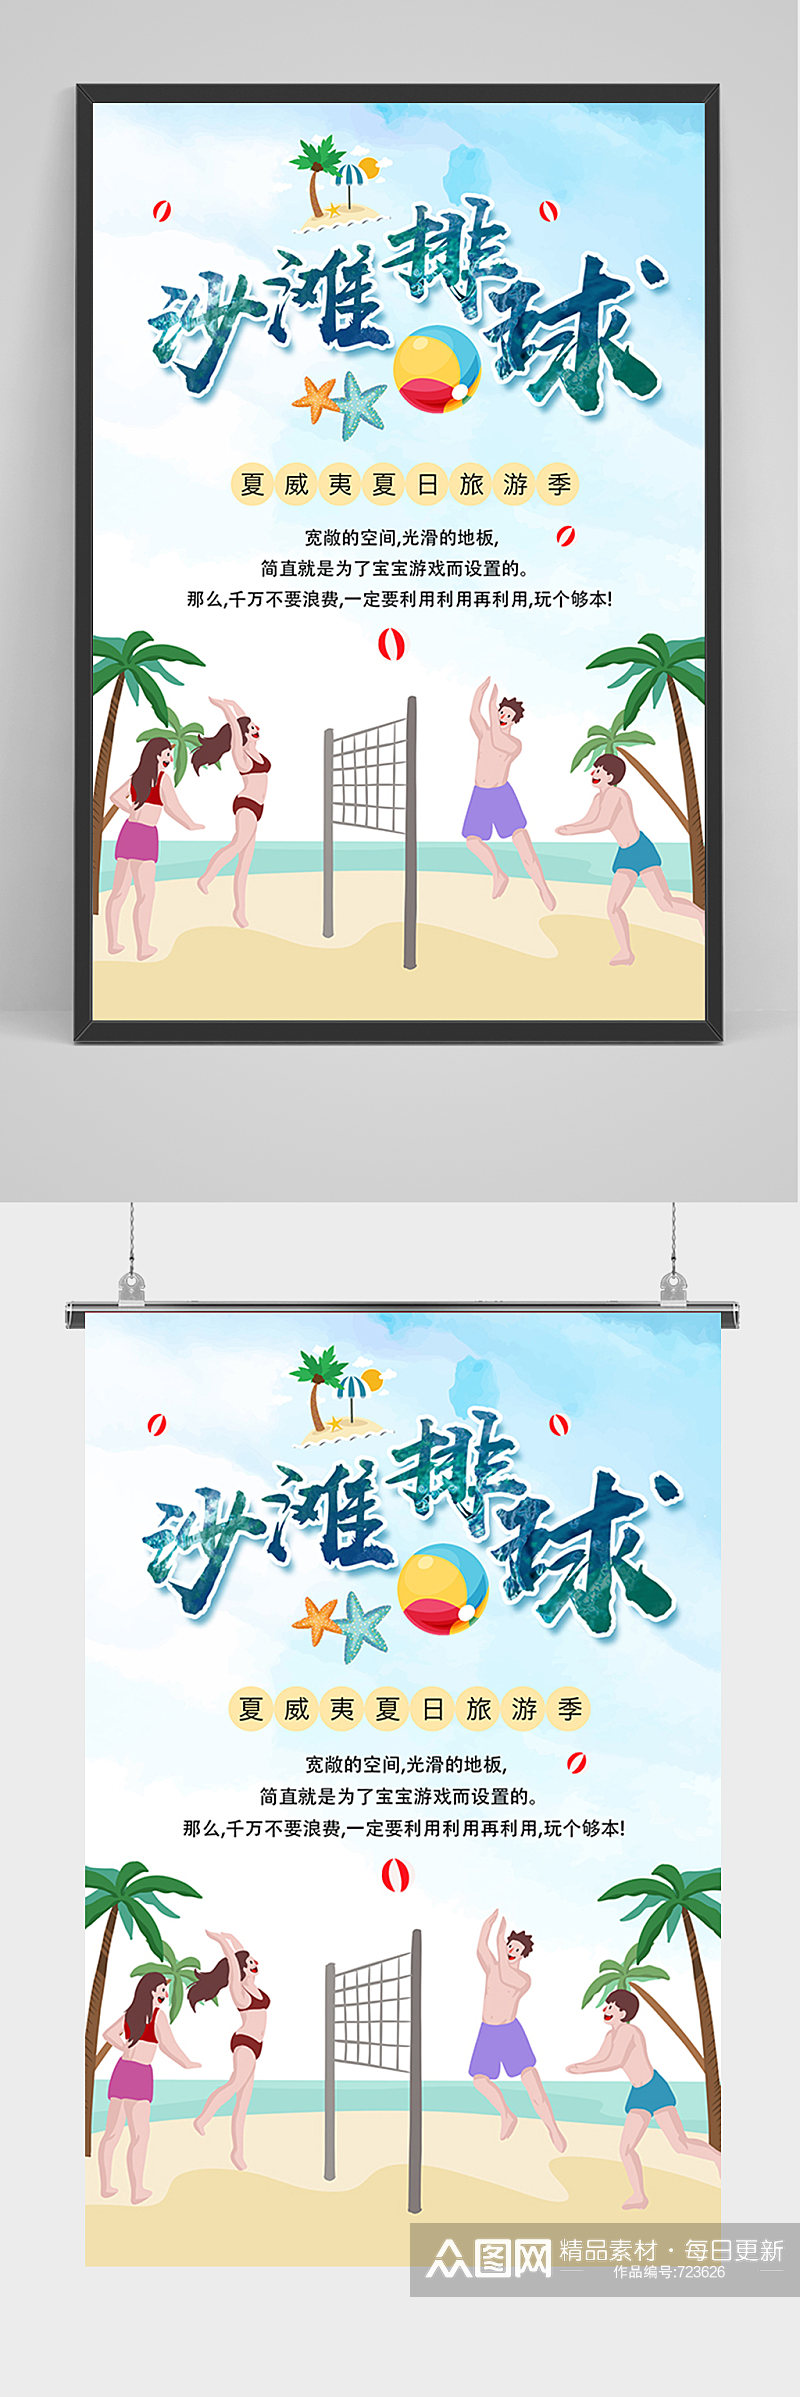 手绘卡通沙滩排球海报素材